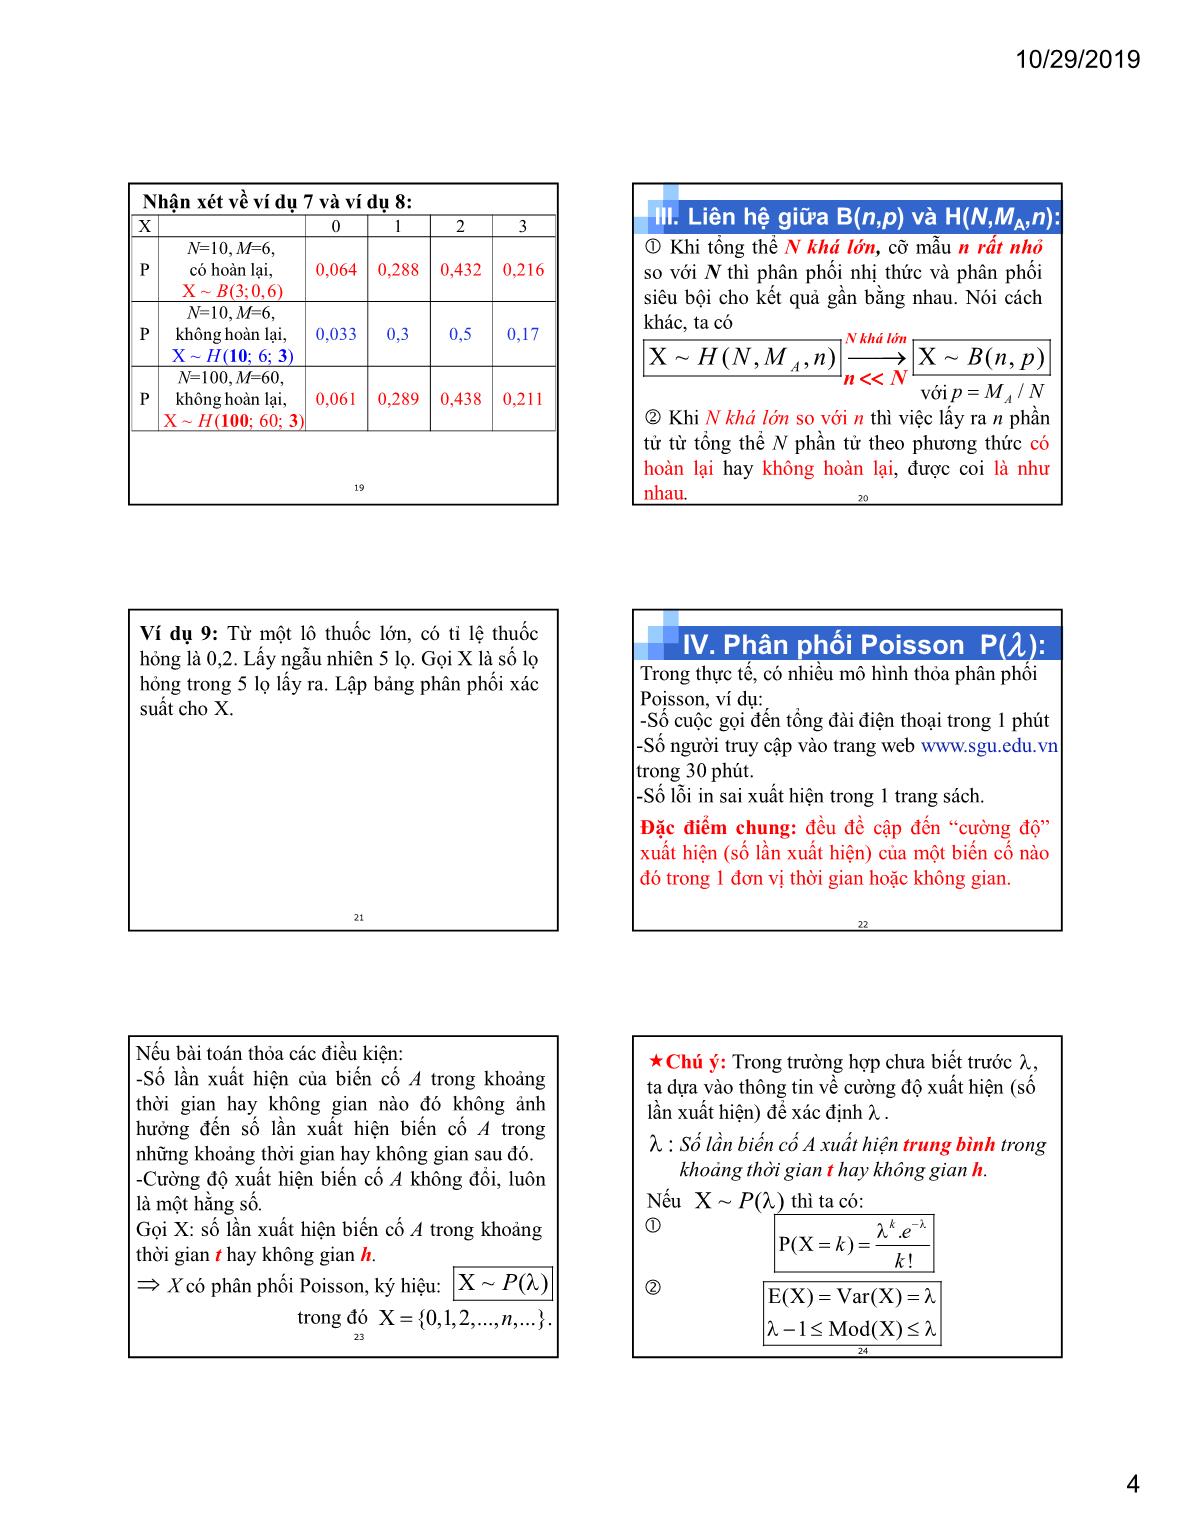 Bài giảng Xác suất thống kê - Chương 3: Một số quy luật phân phối xác suất - Phan Trung Hiếu trang 4